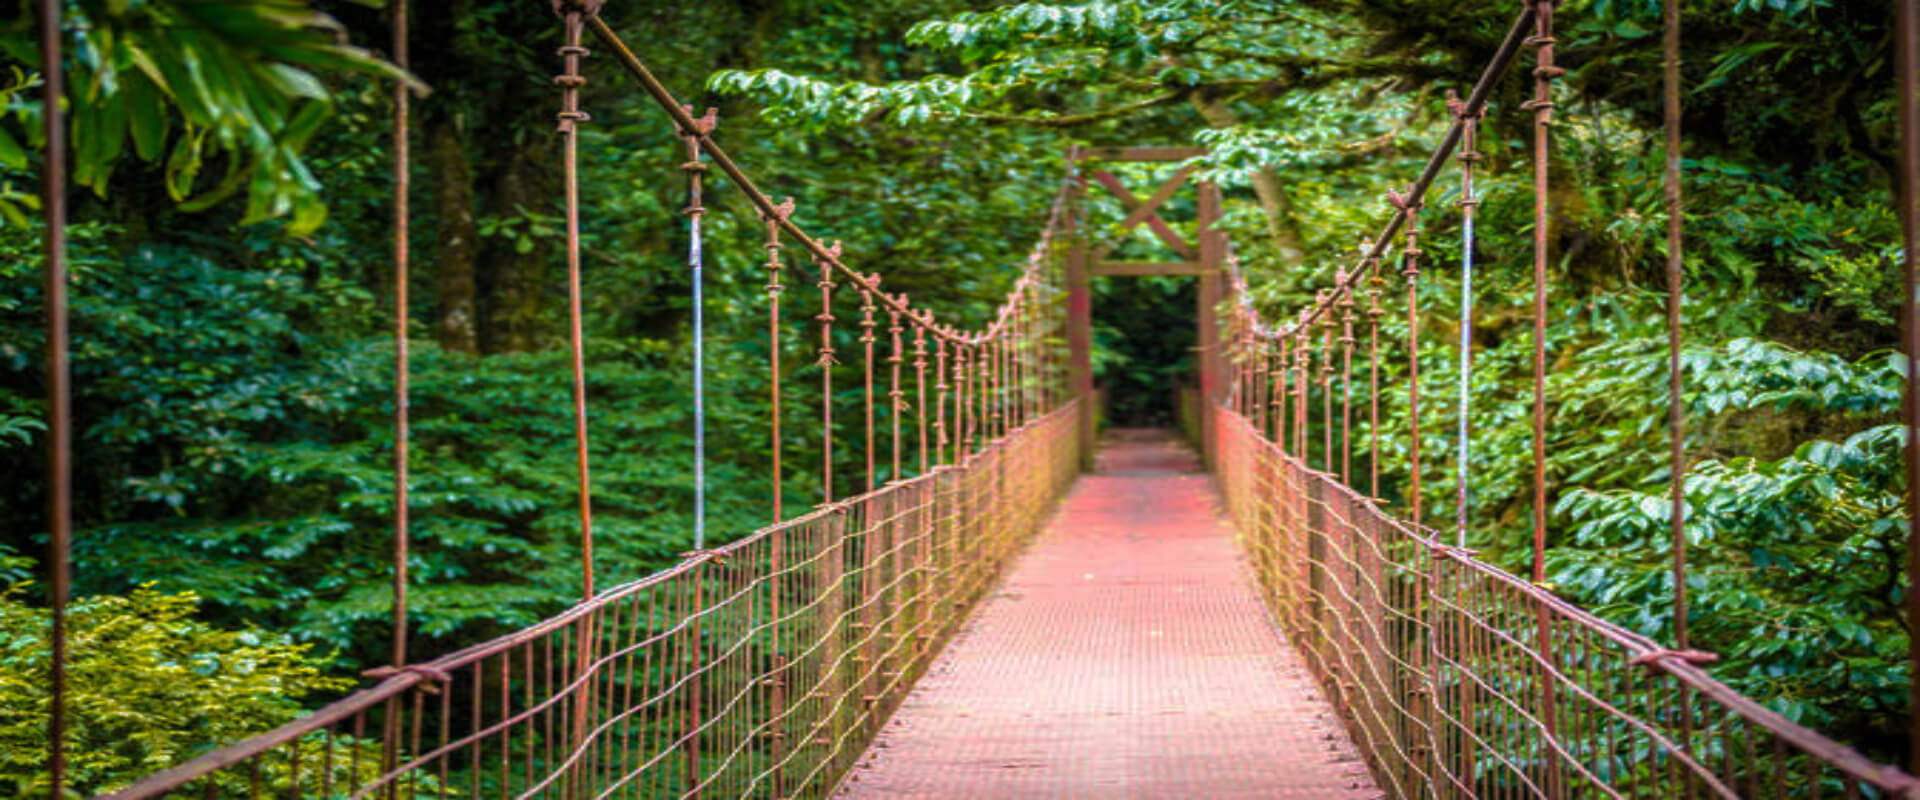 Arenal Hanging Bridges Walking Tour | Costa Rica Jade Tours